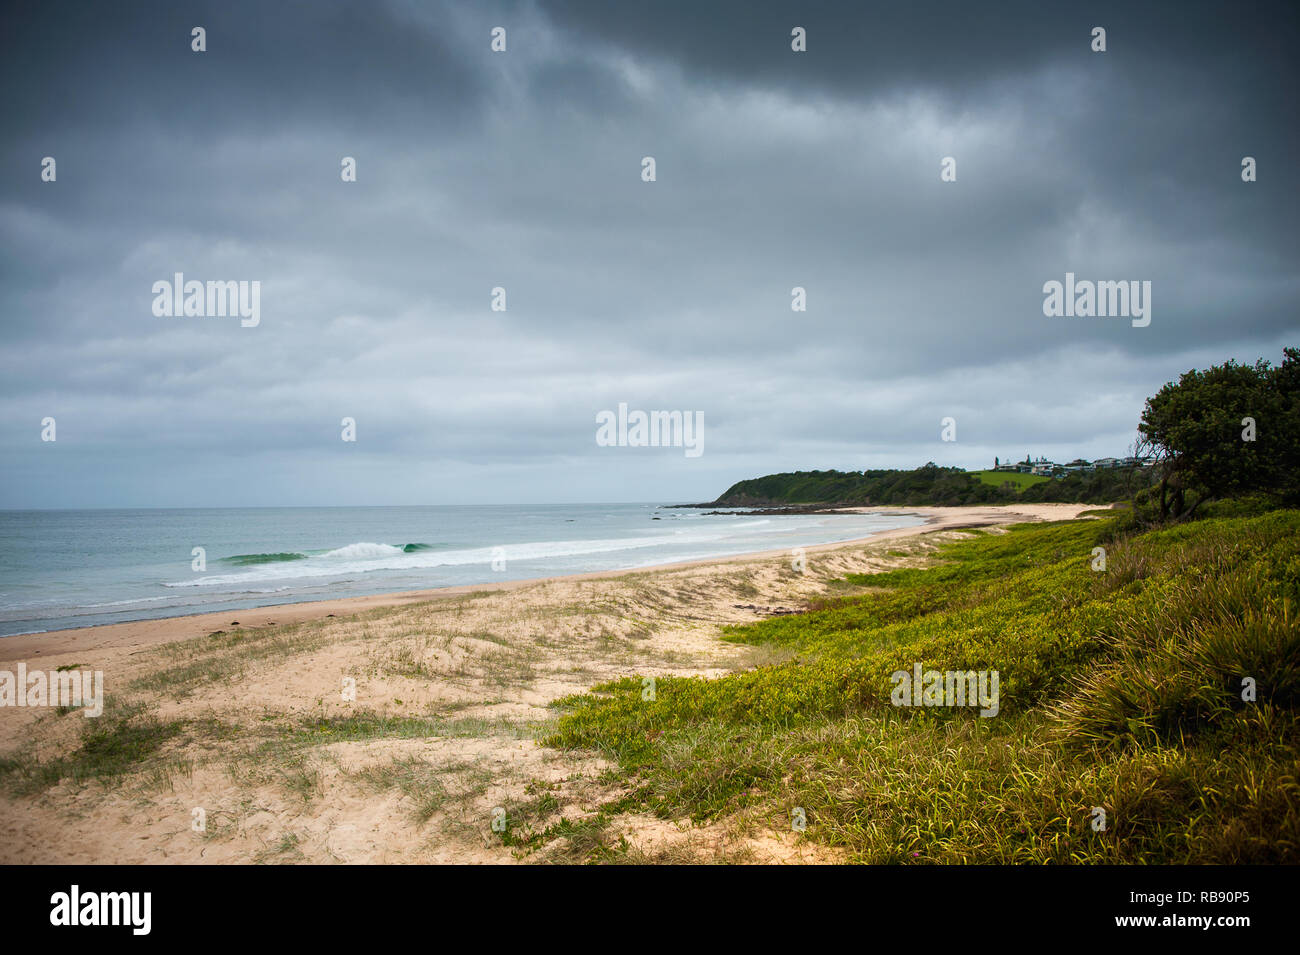 Diamond Beach sur la côte centrale, New South Wales, Australie. Scène à couper le souffle, forêt pluviale côtière répond aux dunes de sable avec un fond de ciel orageux Banque D'Images